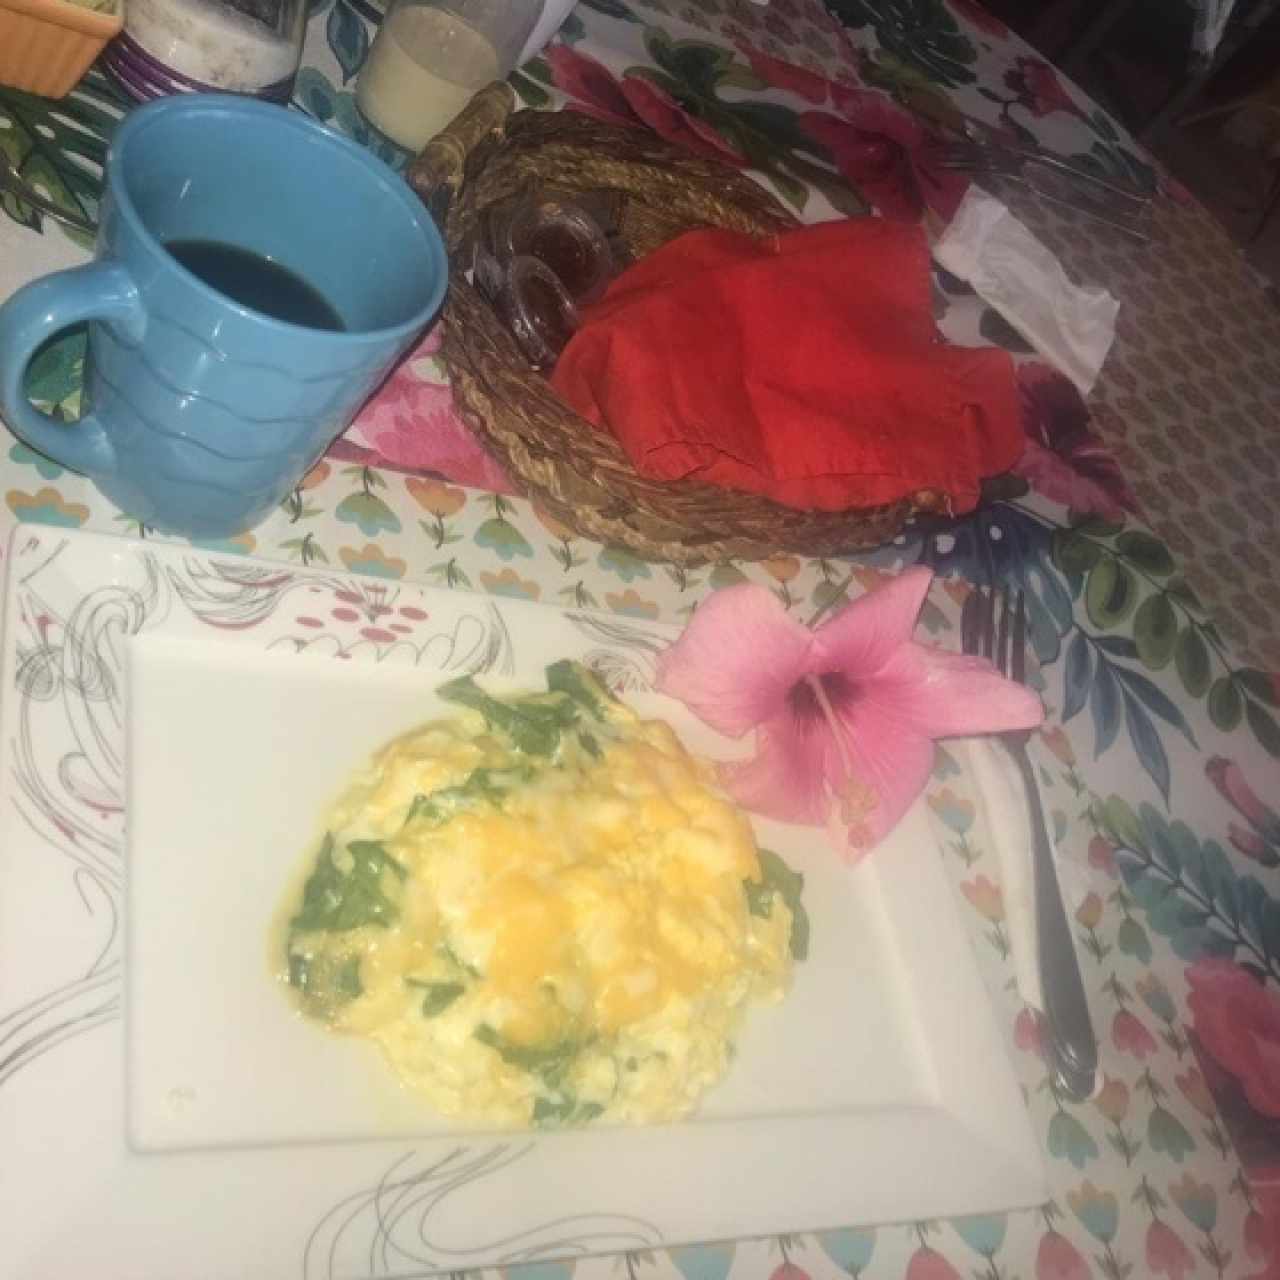 Huevos revuelto con queso mozarela y espinaca